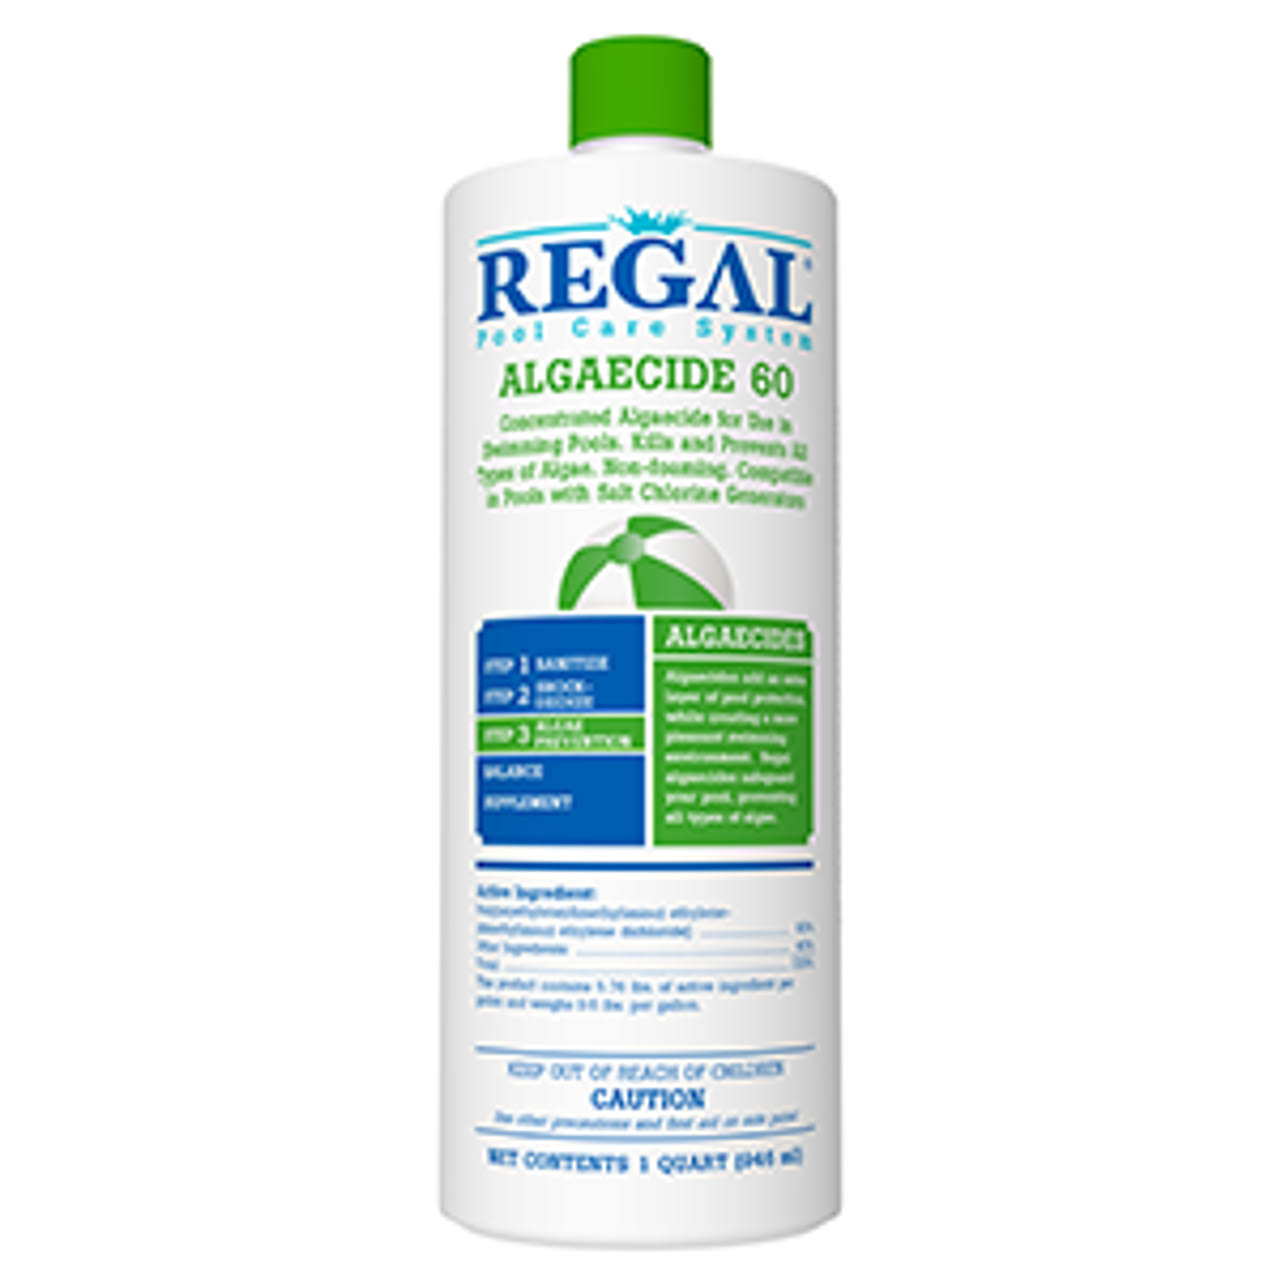 Regal Algaecide 60 1 qt - 50-2660